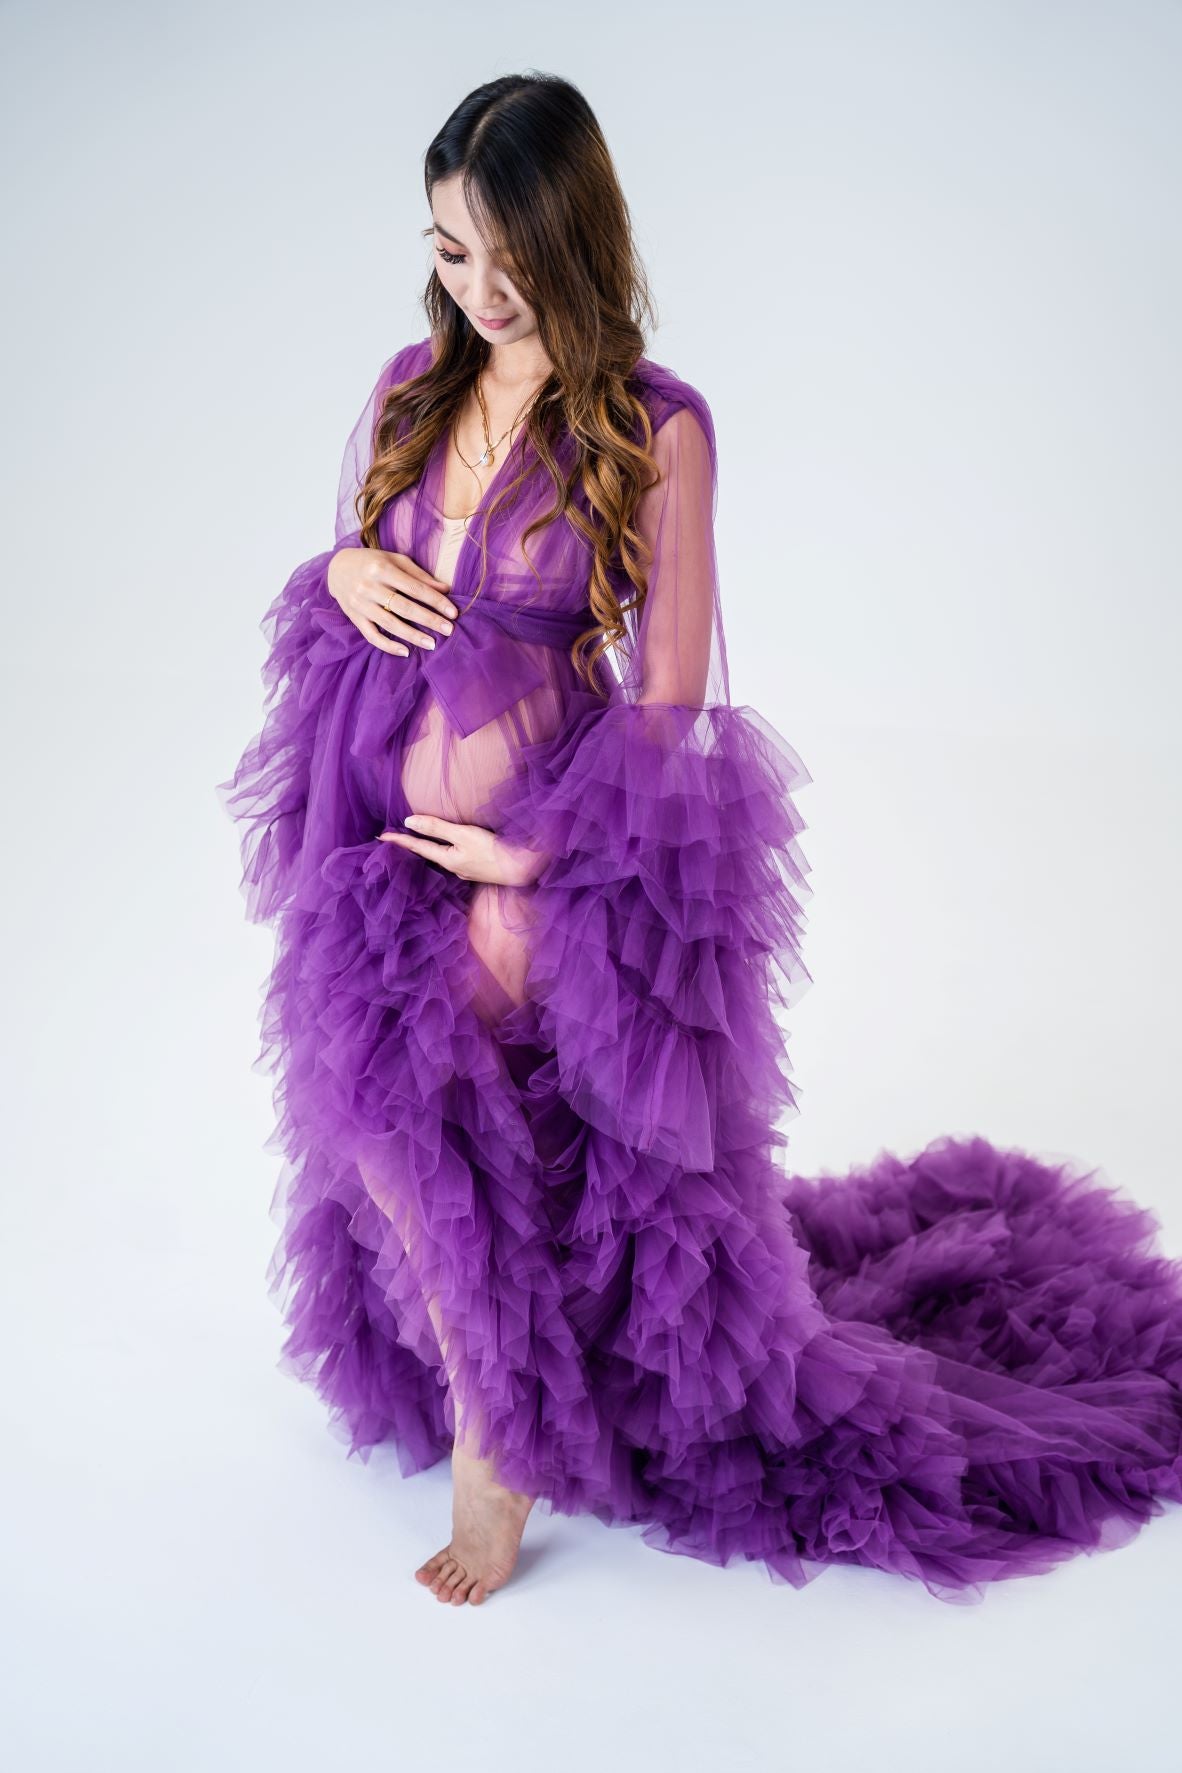 maternity dresses australia - purple tulle robe